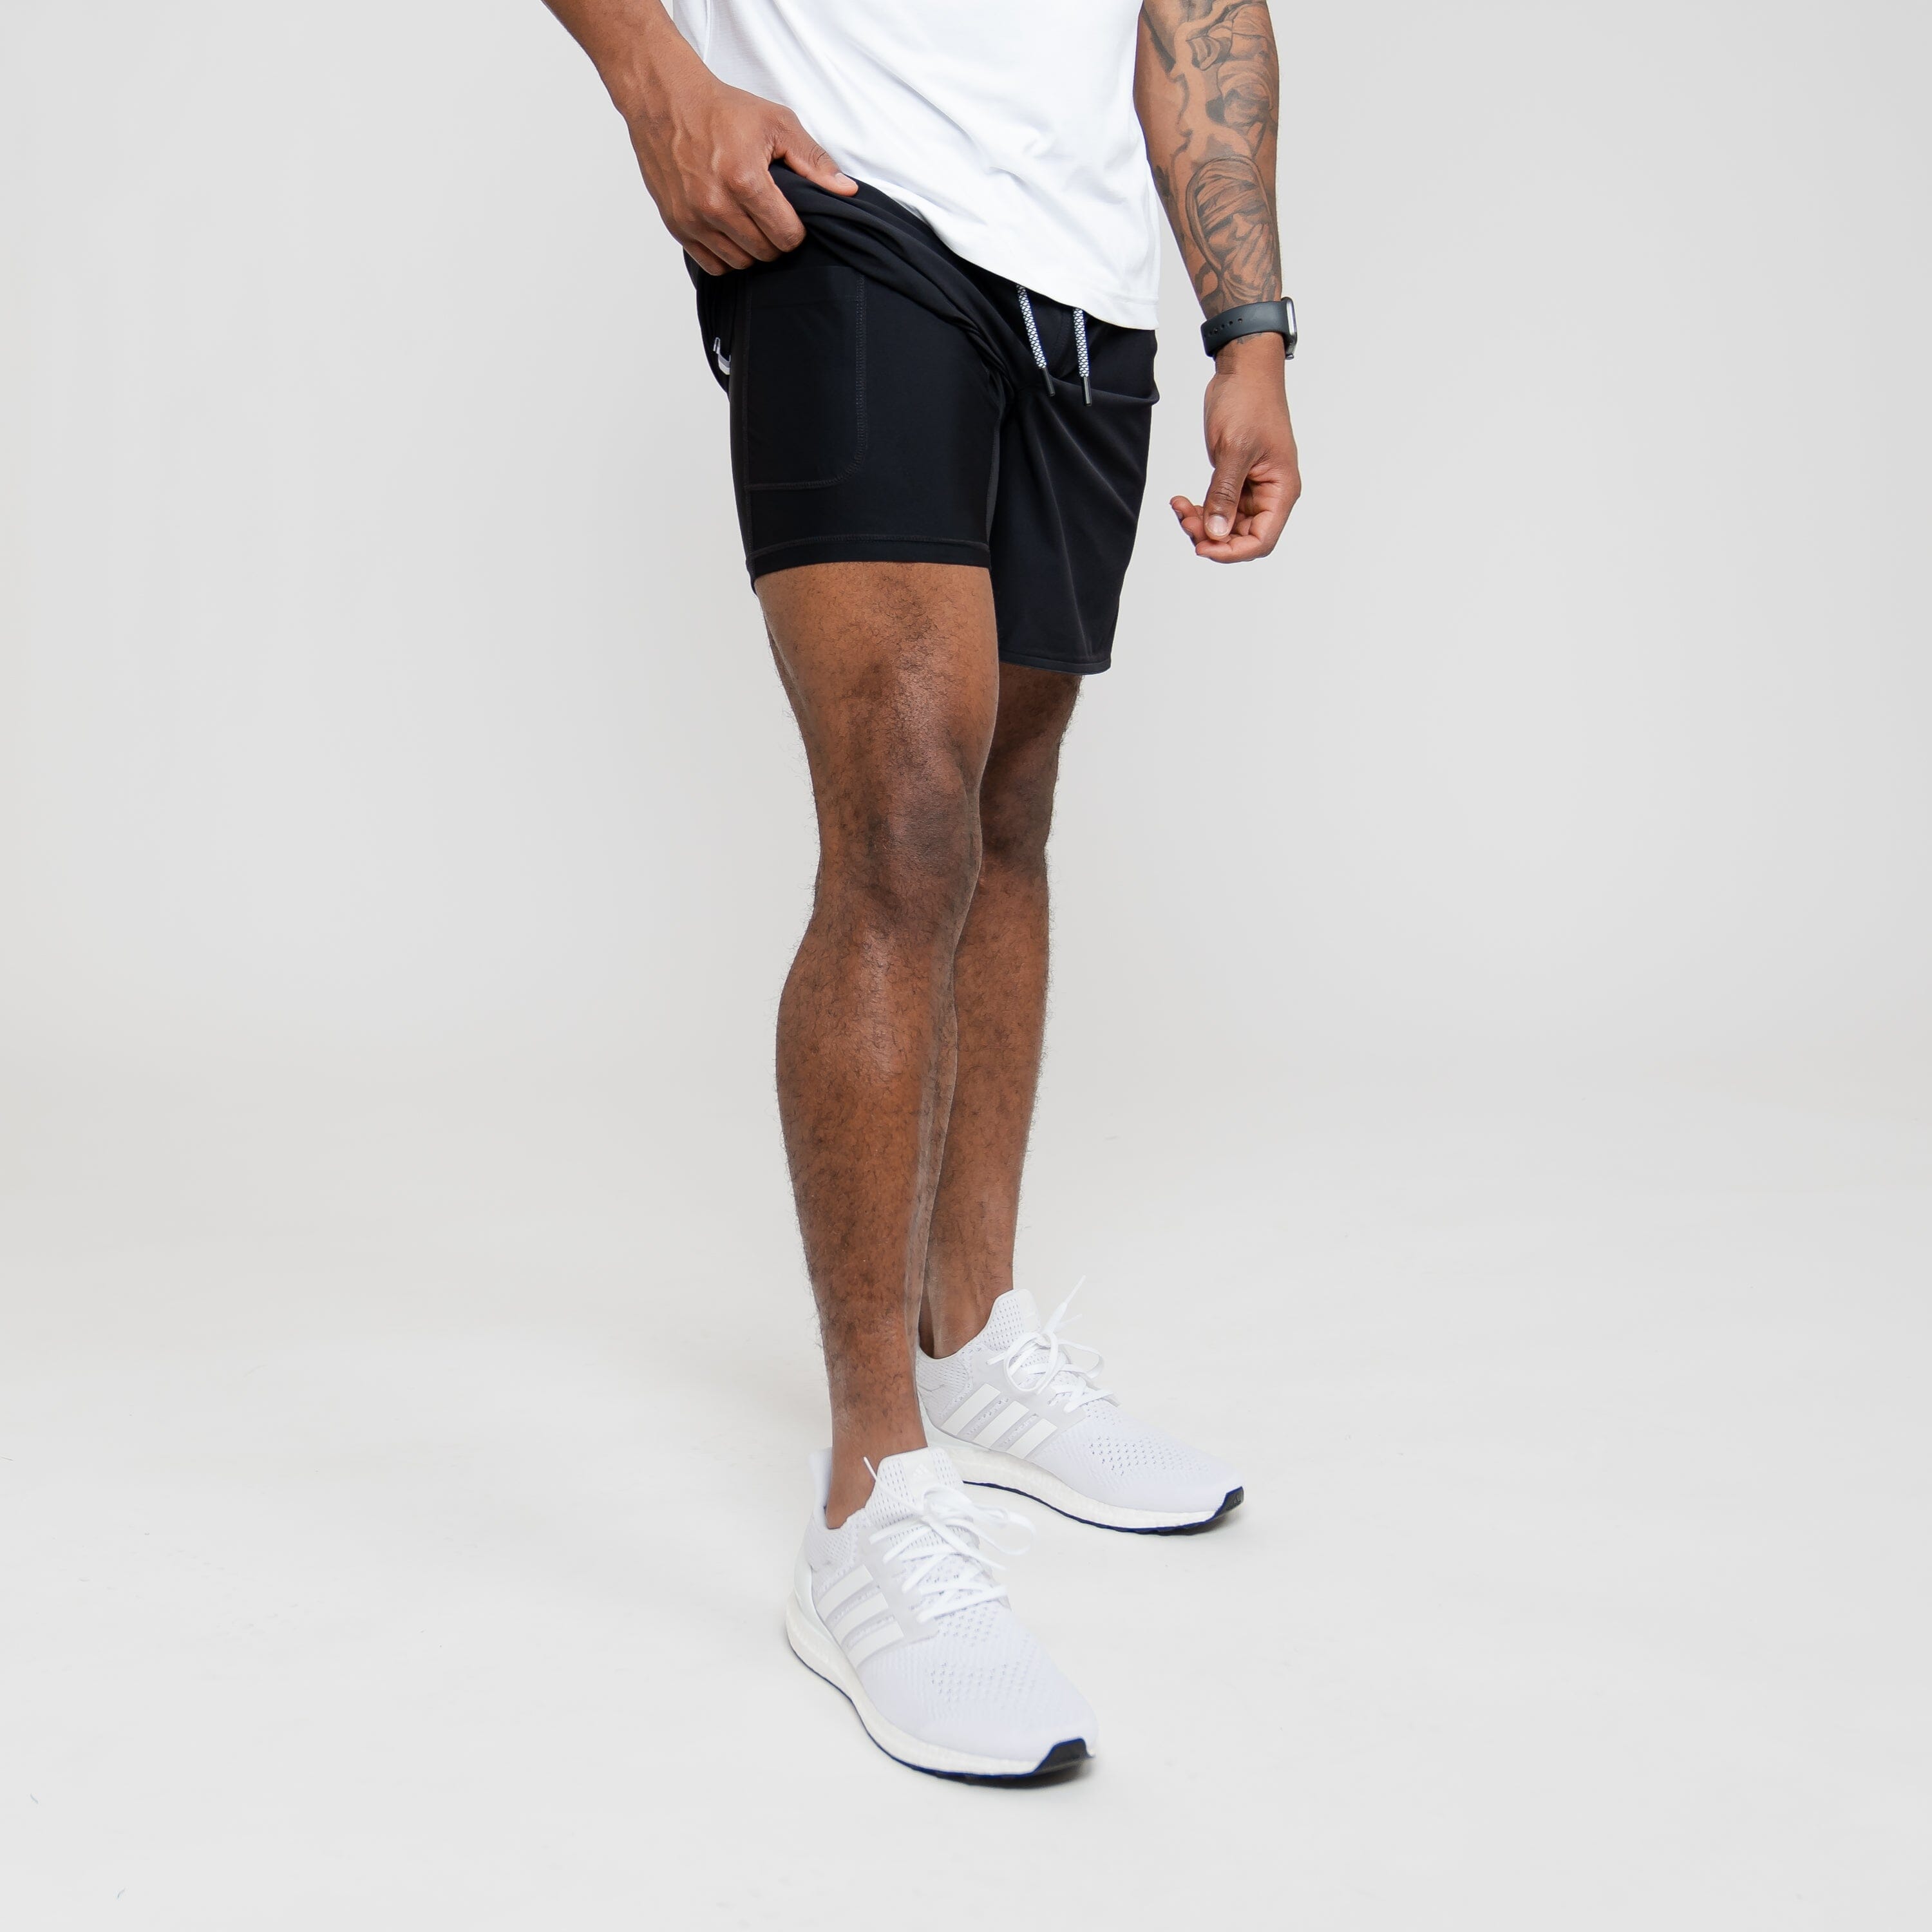 Black Athletic Shorts